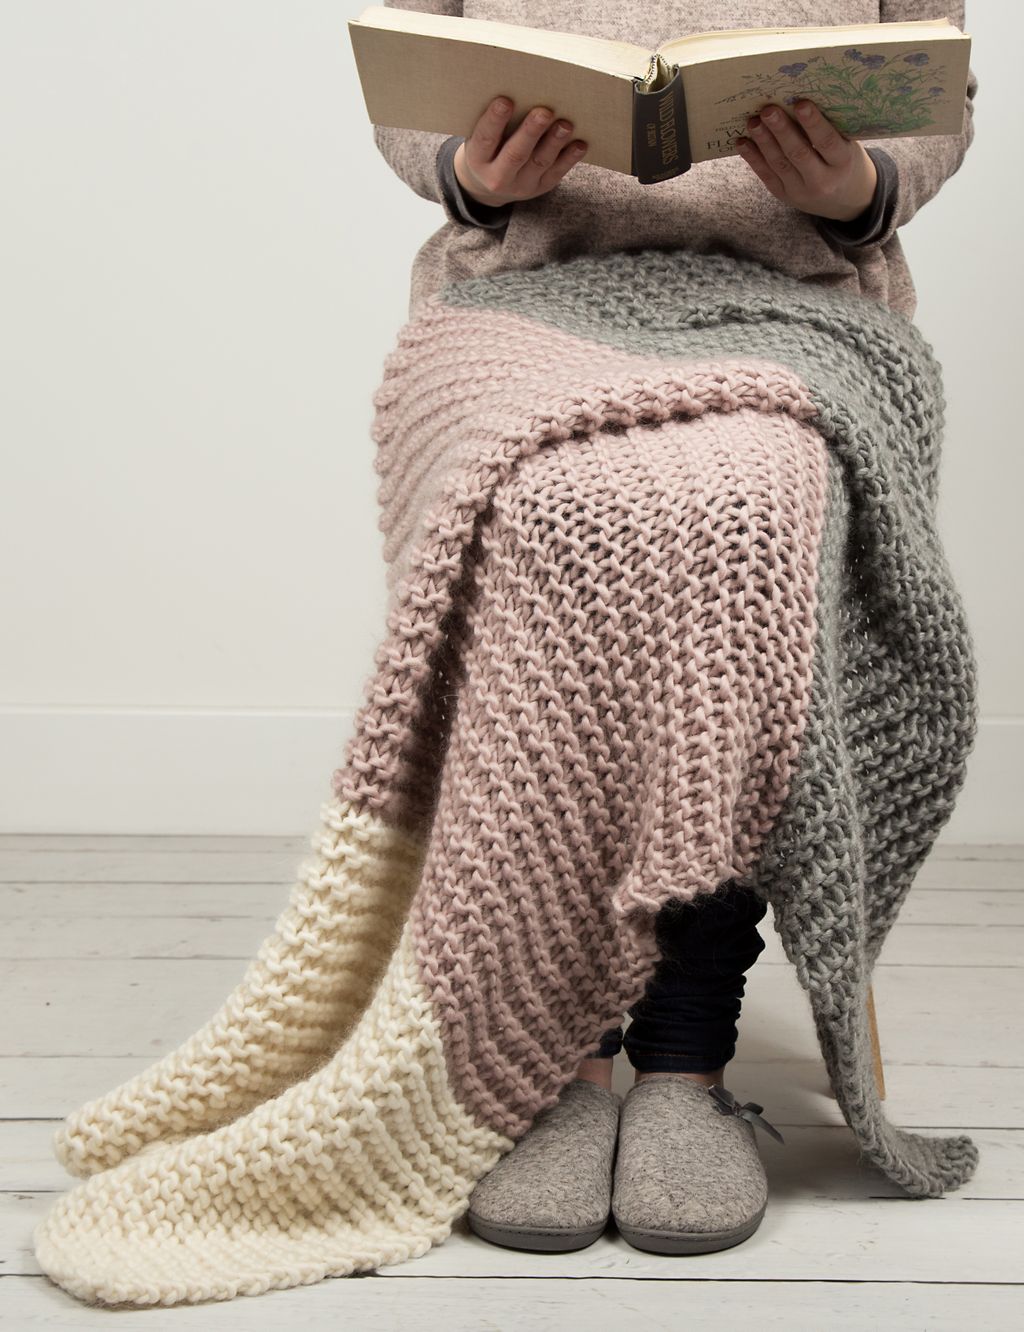 Hannah's Blanket Knitting Kit 3 of 3